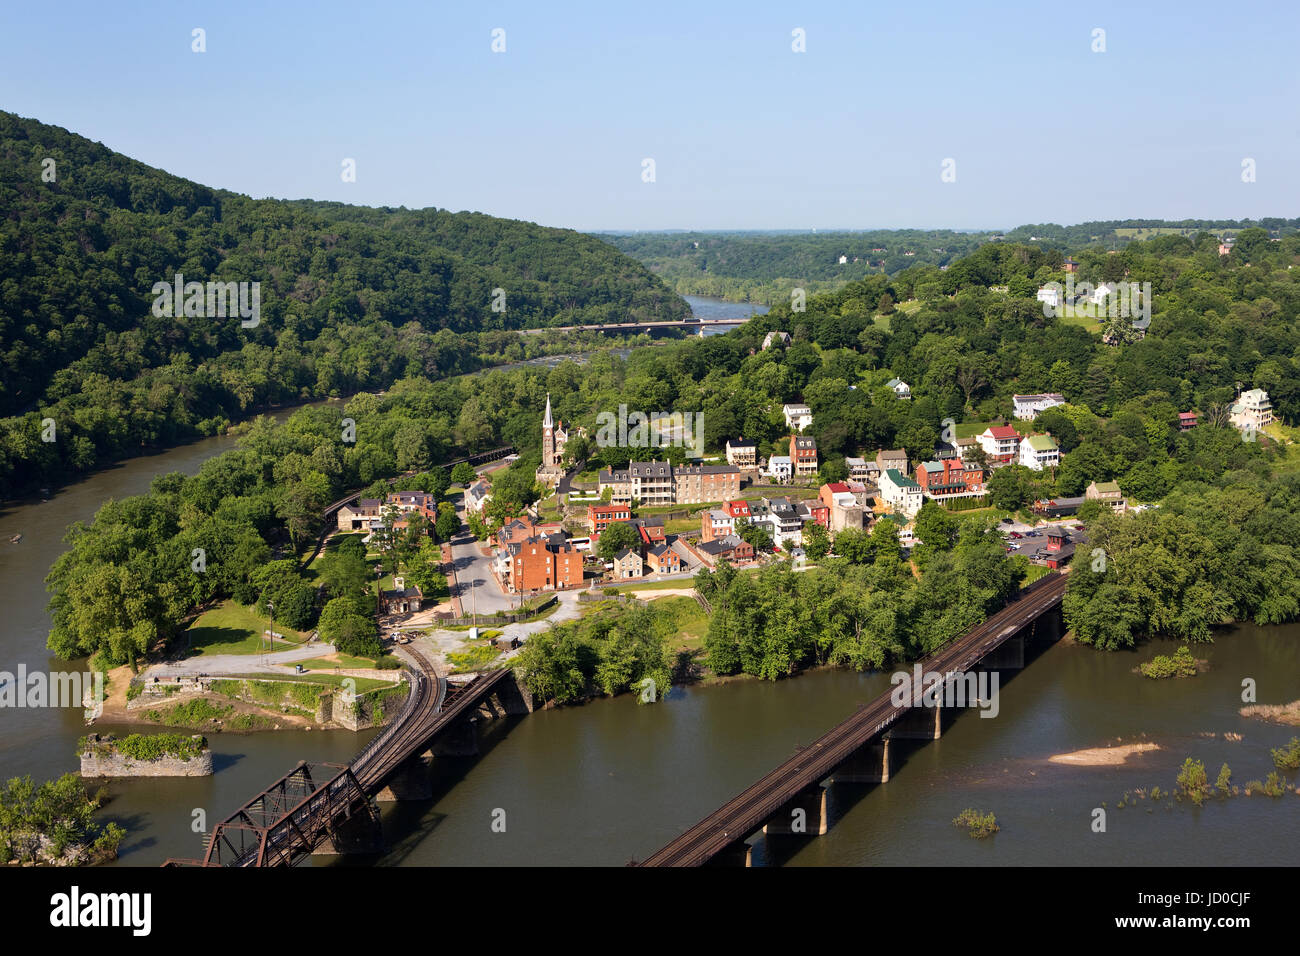 Vista aerea della città di harpers Ferry, West Virginia, che include harpers Ferry National Historical Park, situato tra il fiume Potomac e Foto Stock